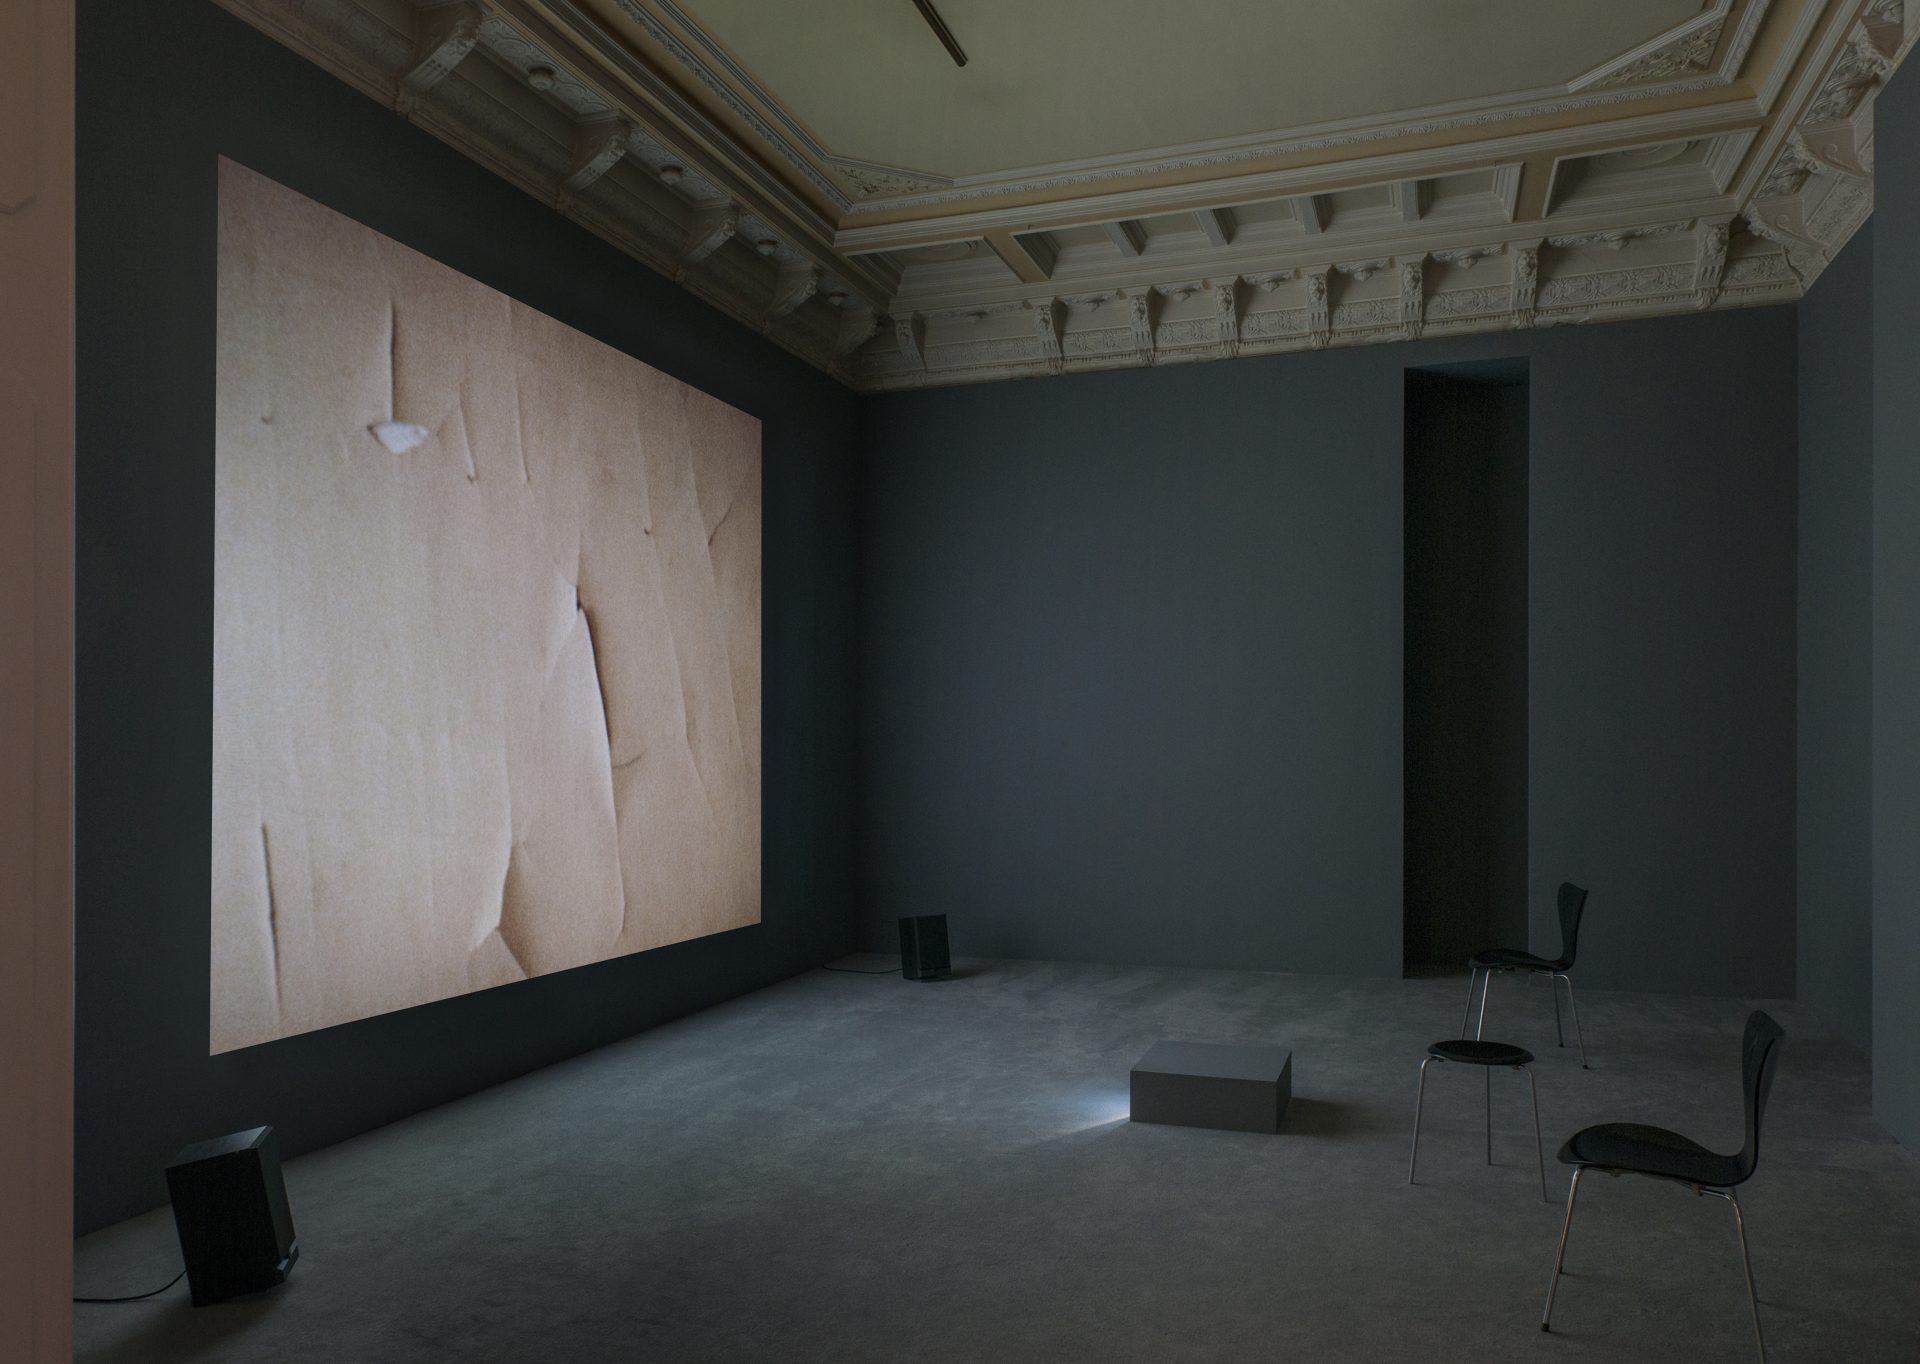 Manon de Boer, installation view at Jan Mot 2015